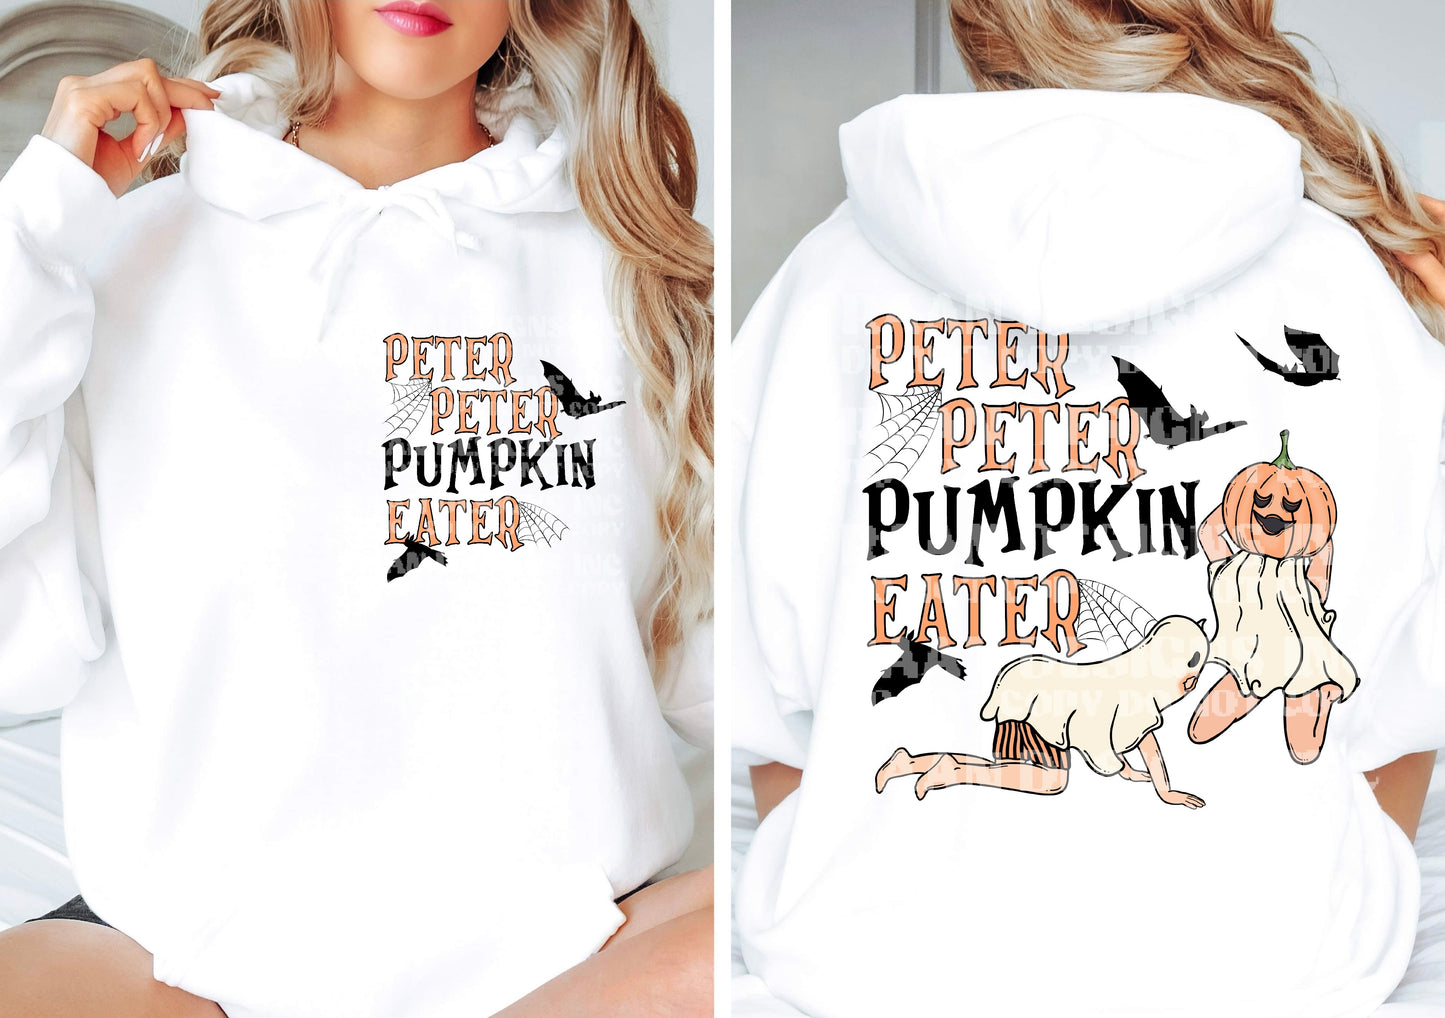 Peter Peter Pumpkin Eater (DTF) 10-209